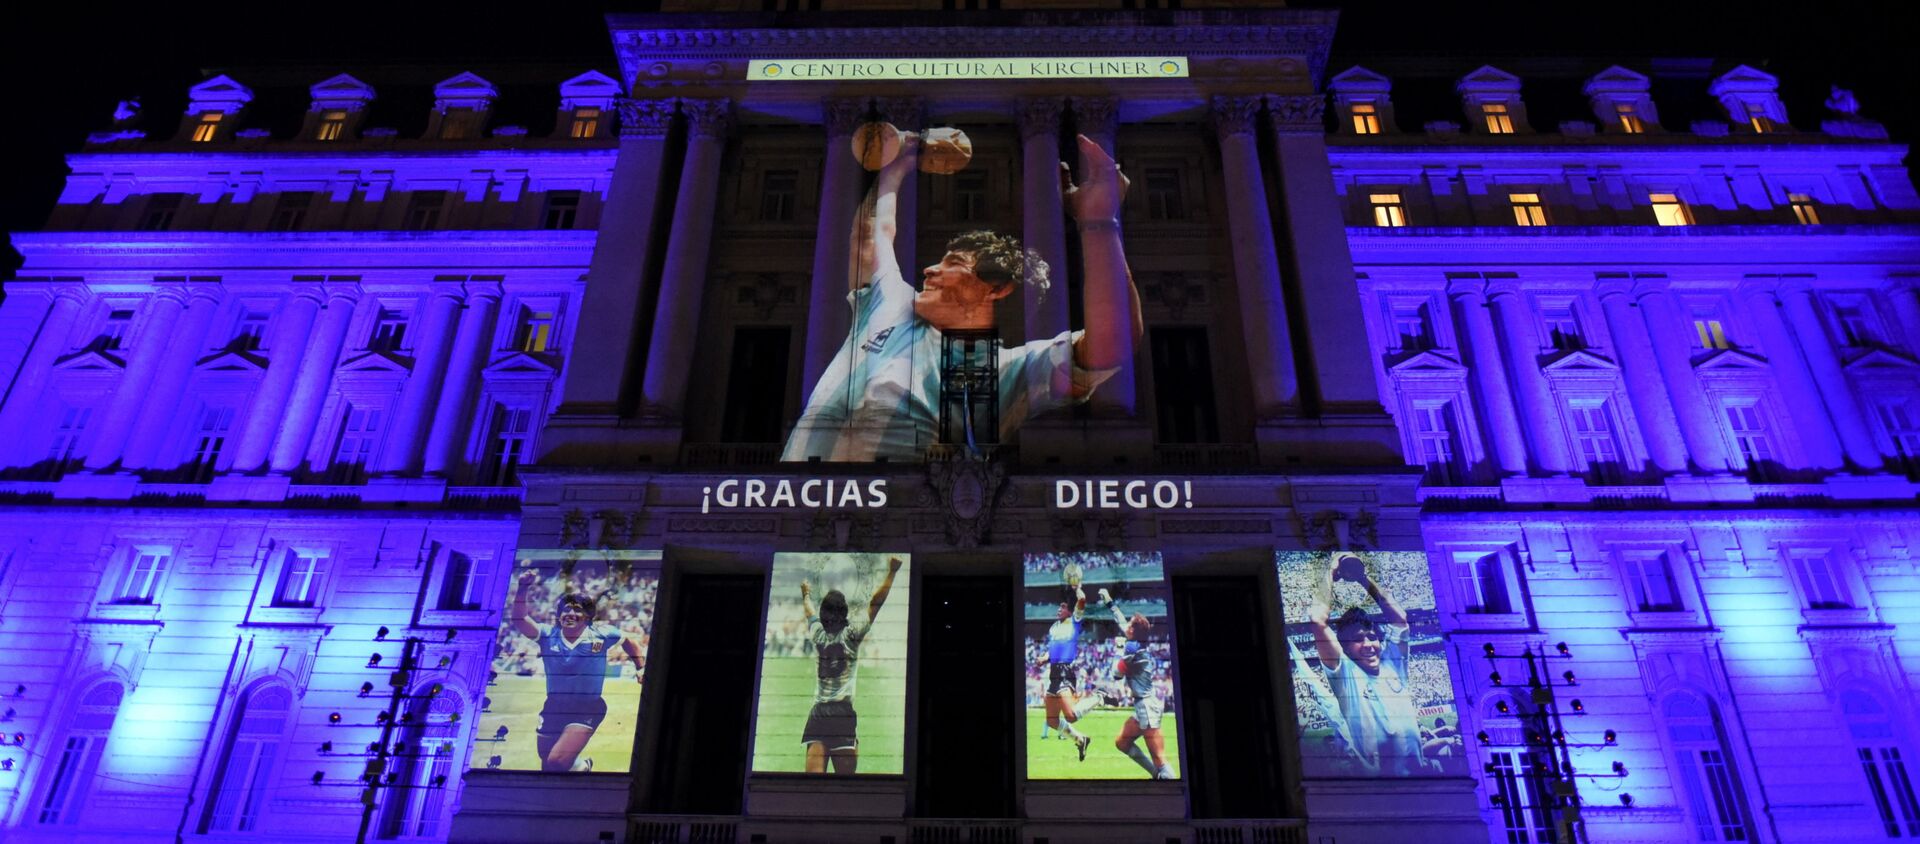 Fotografías de la fallecida leyenda del fútbol Diego Maradona se proyectan en el Centro Cultural Kirchner, en Buenos Aires (Argentina), el 25 de noviembre del 2020 - Sputnik Mundo, 1920, 25.11.2020